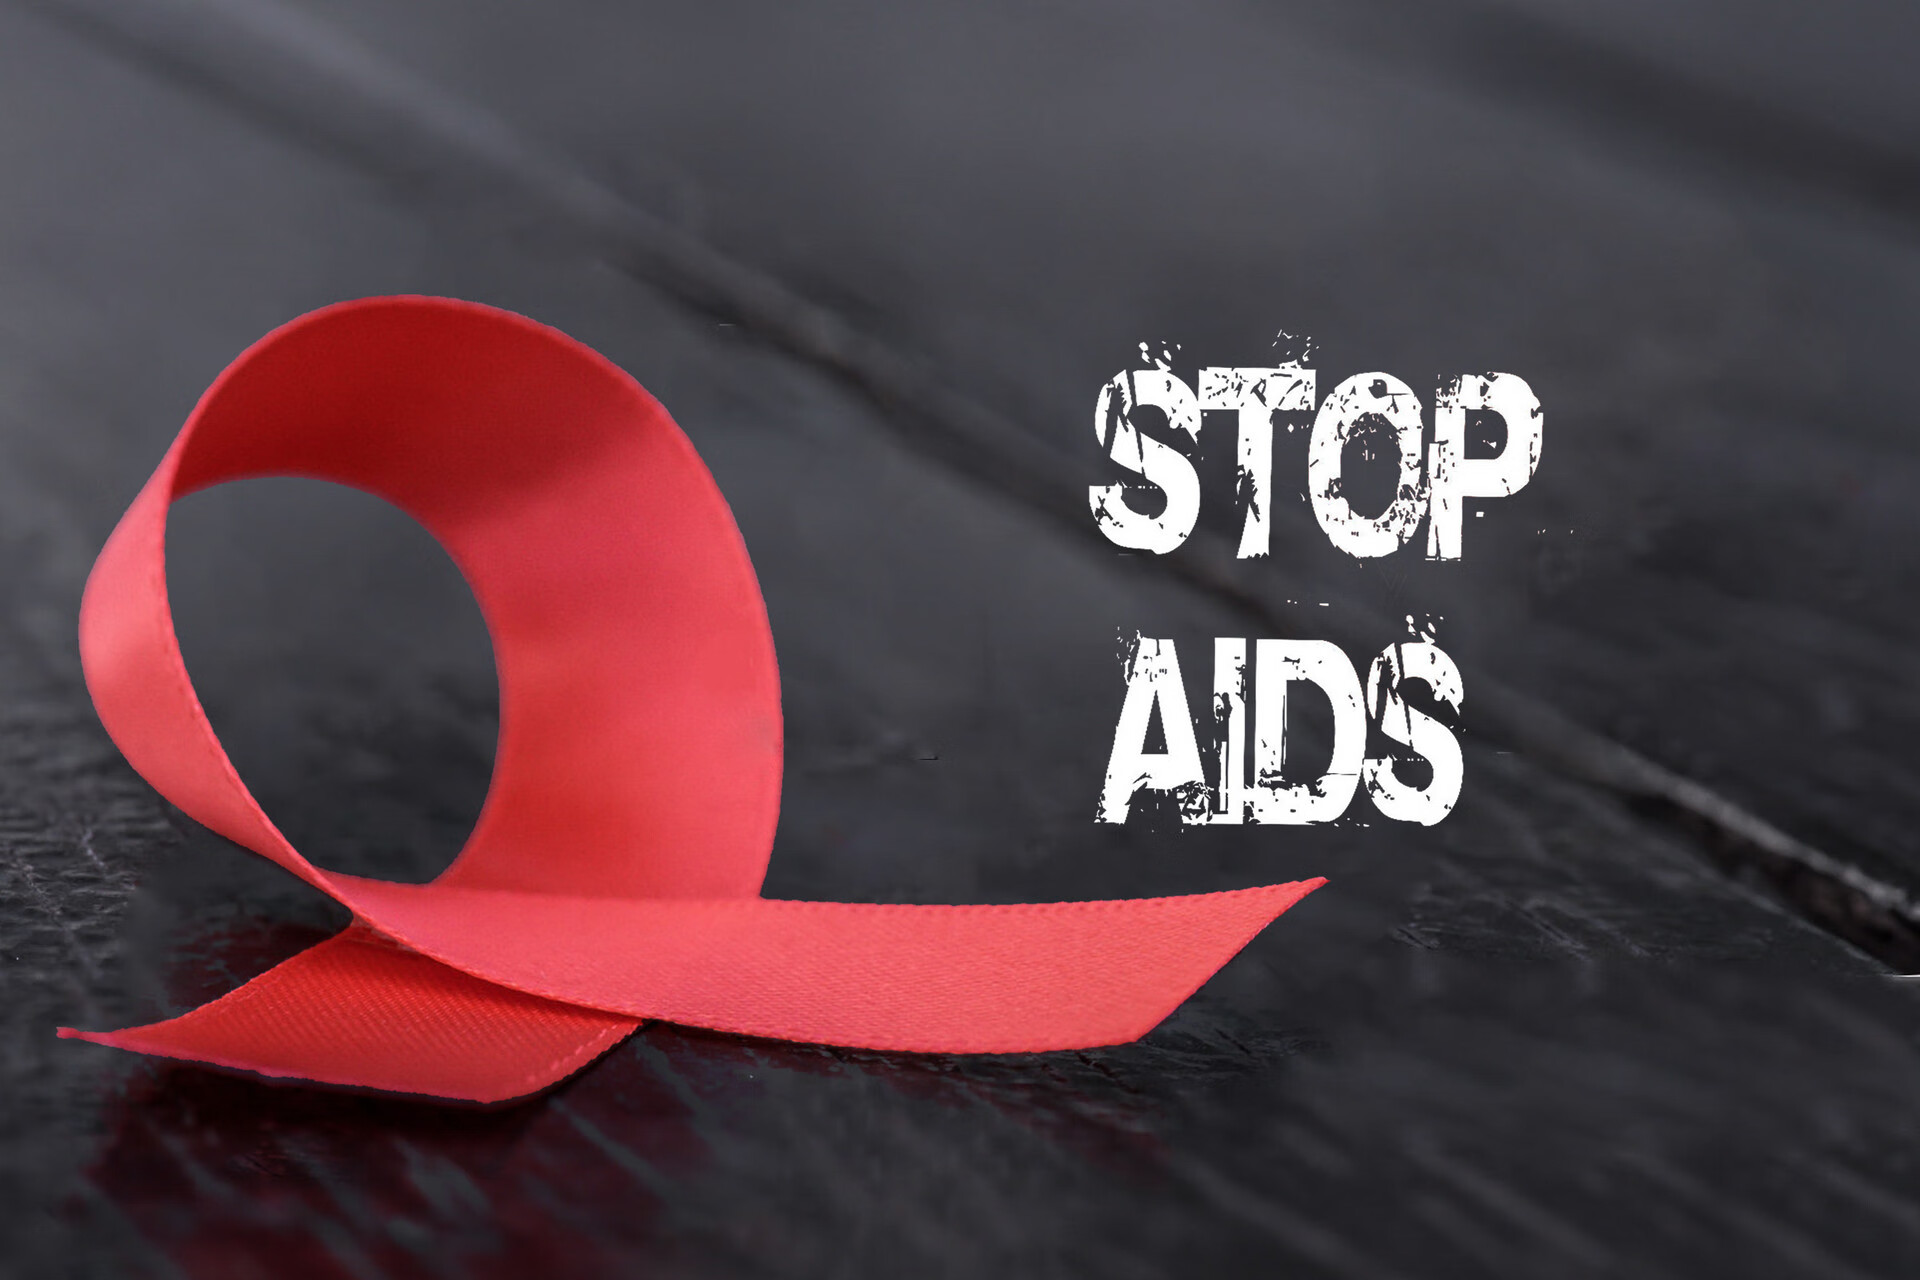 艾滋病宣传日插画 - 模板 - Canva可画